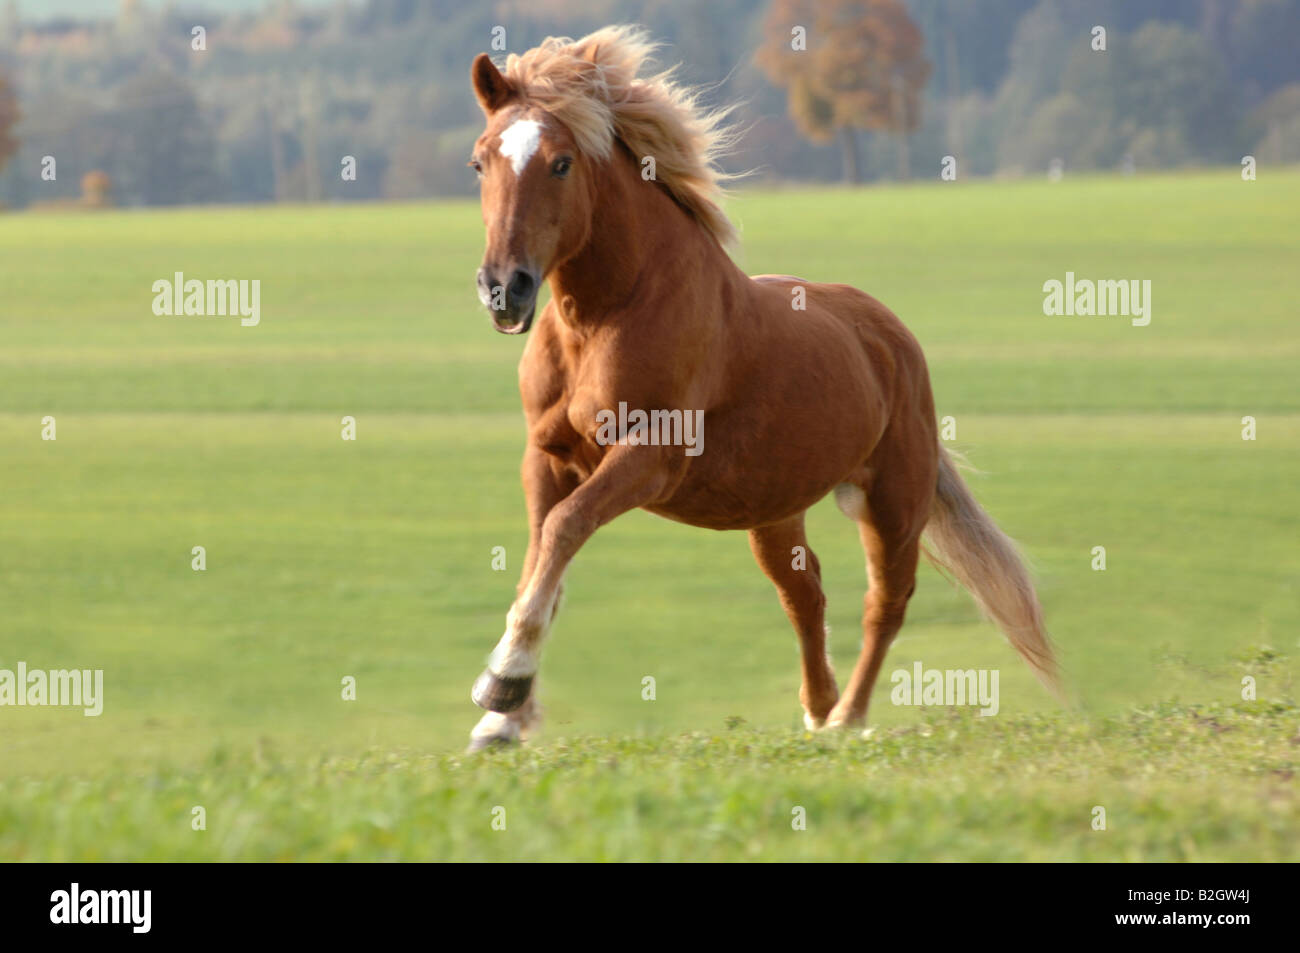 Haflinger cavalli di razza avelignese standard salice di pascolo Foto Stock